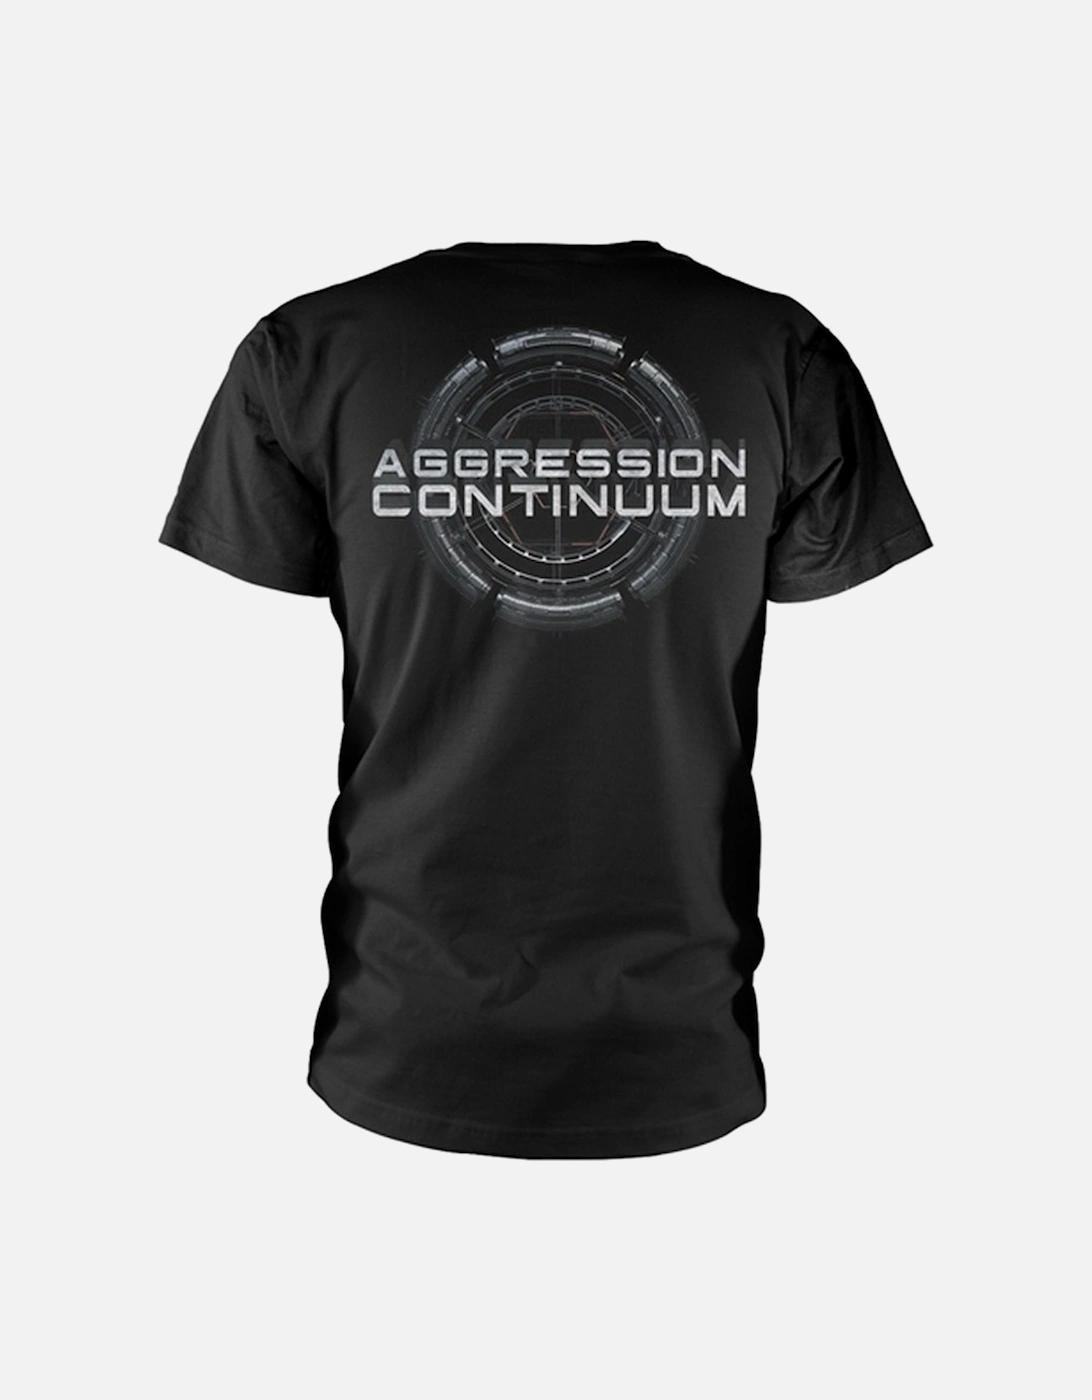 Unisex Adult Aggression Continuum T-Shirt